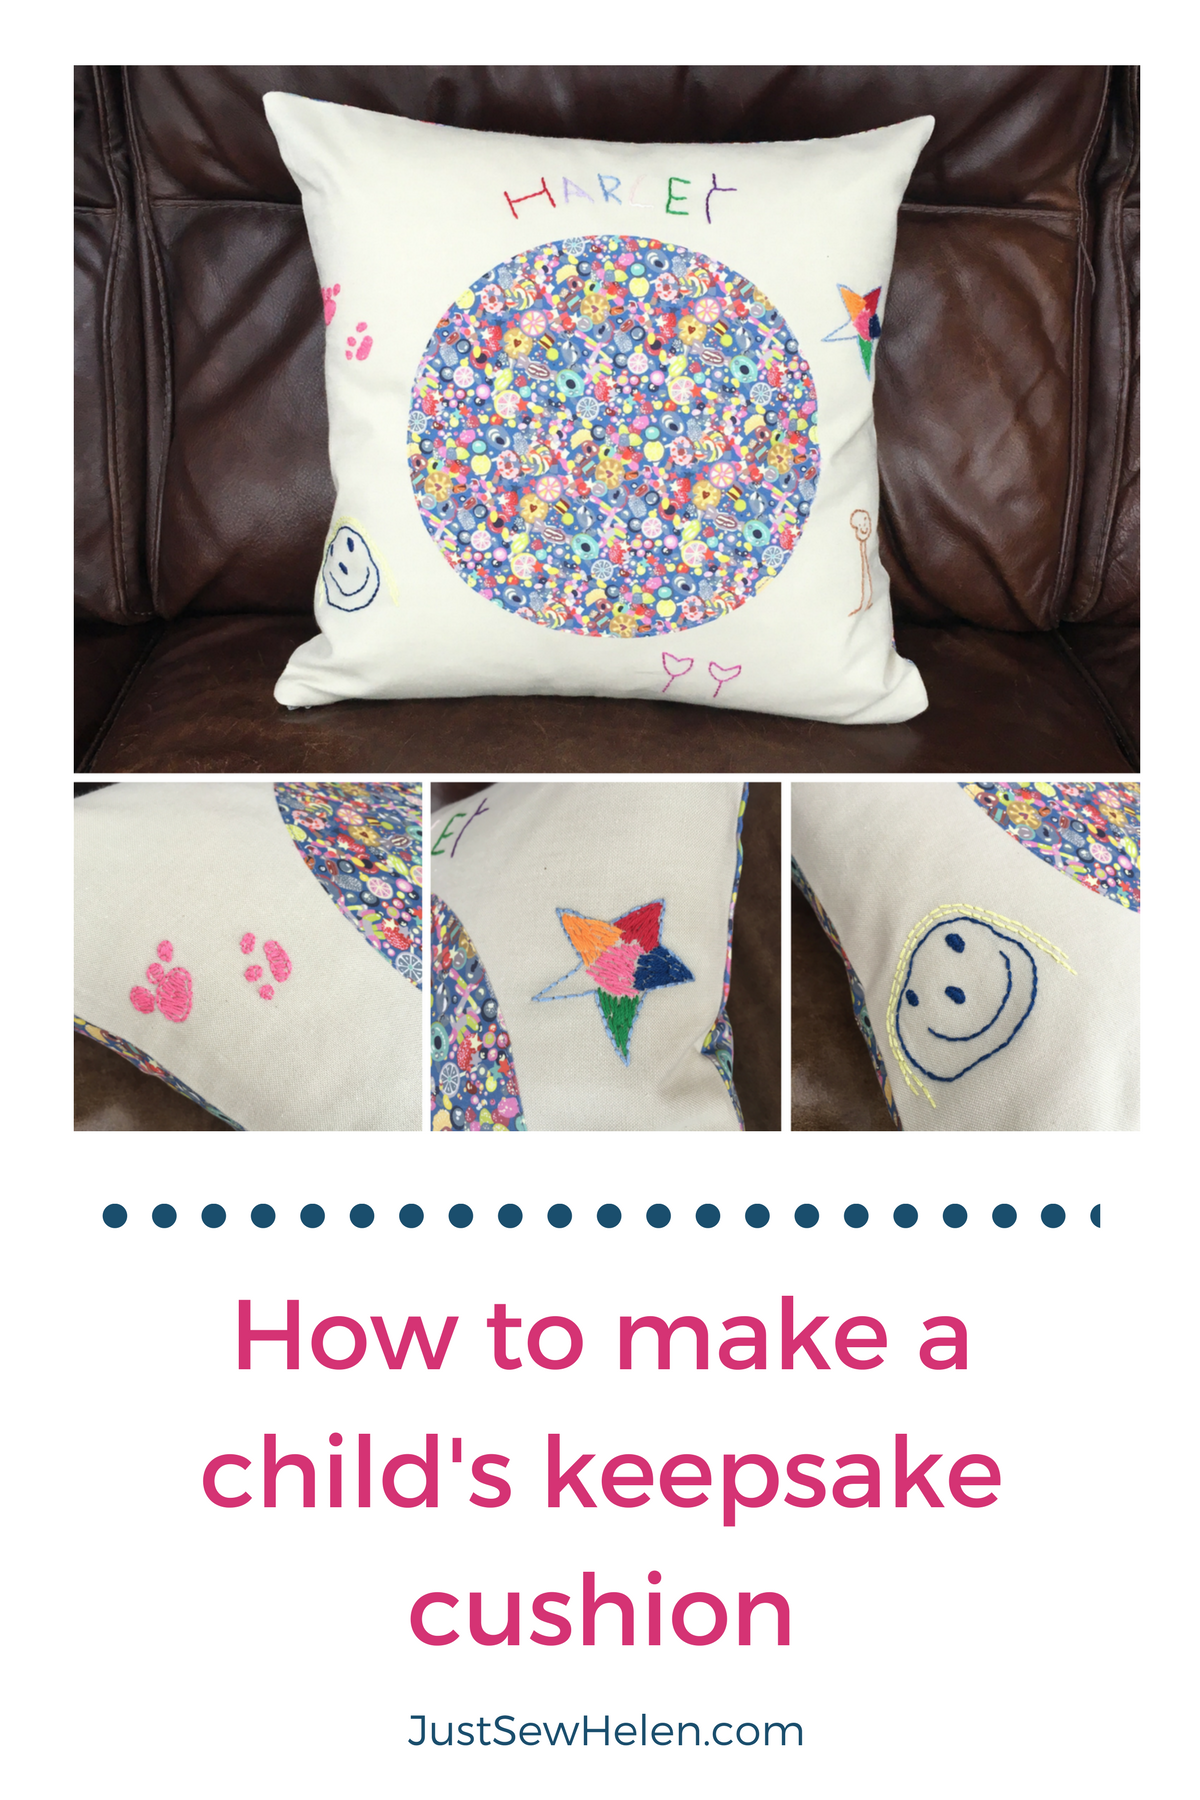 How to make a childs keepsake cushion - JustSewHelen.com